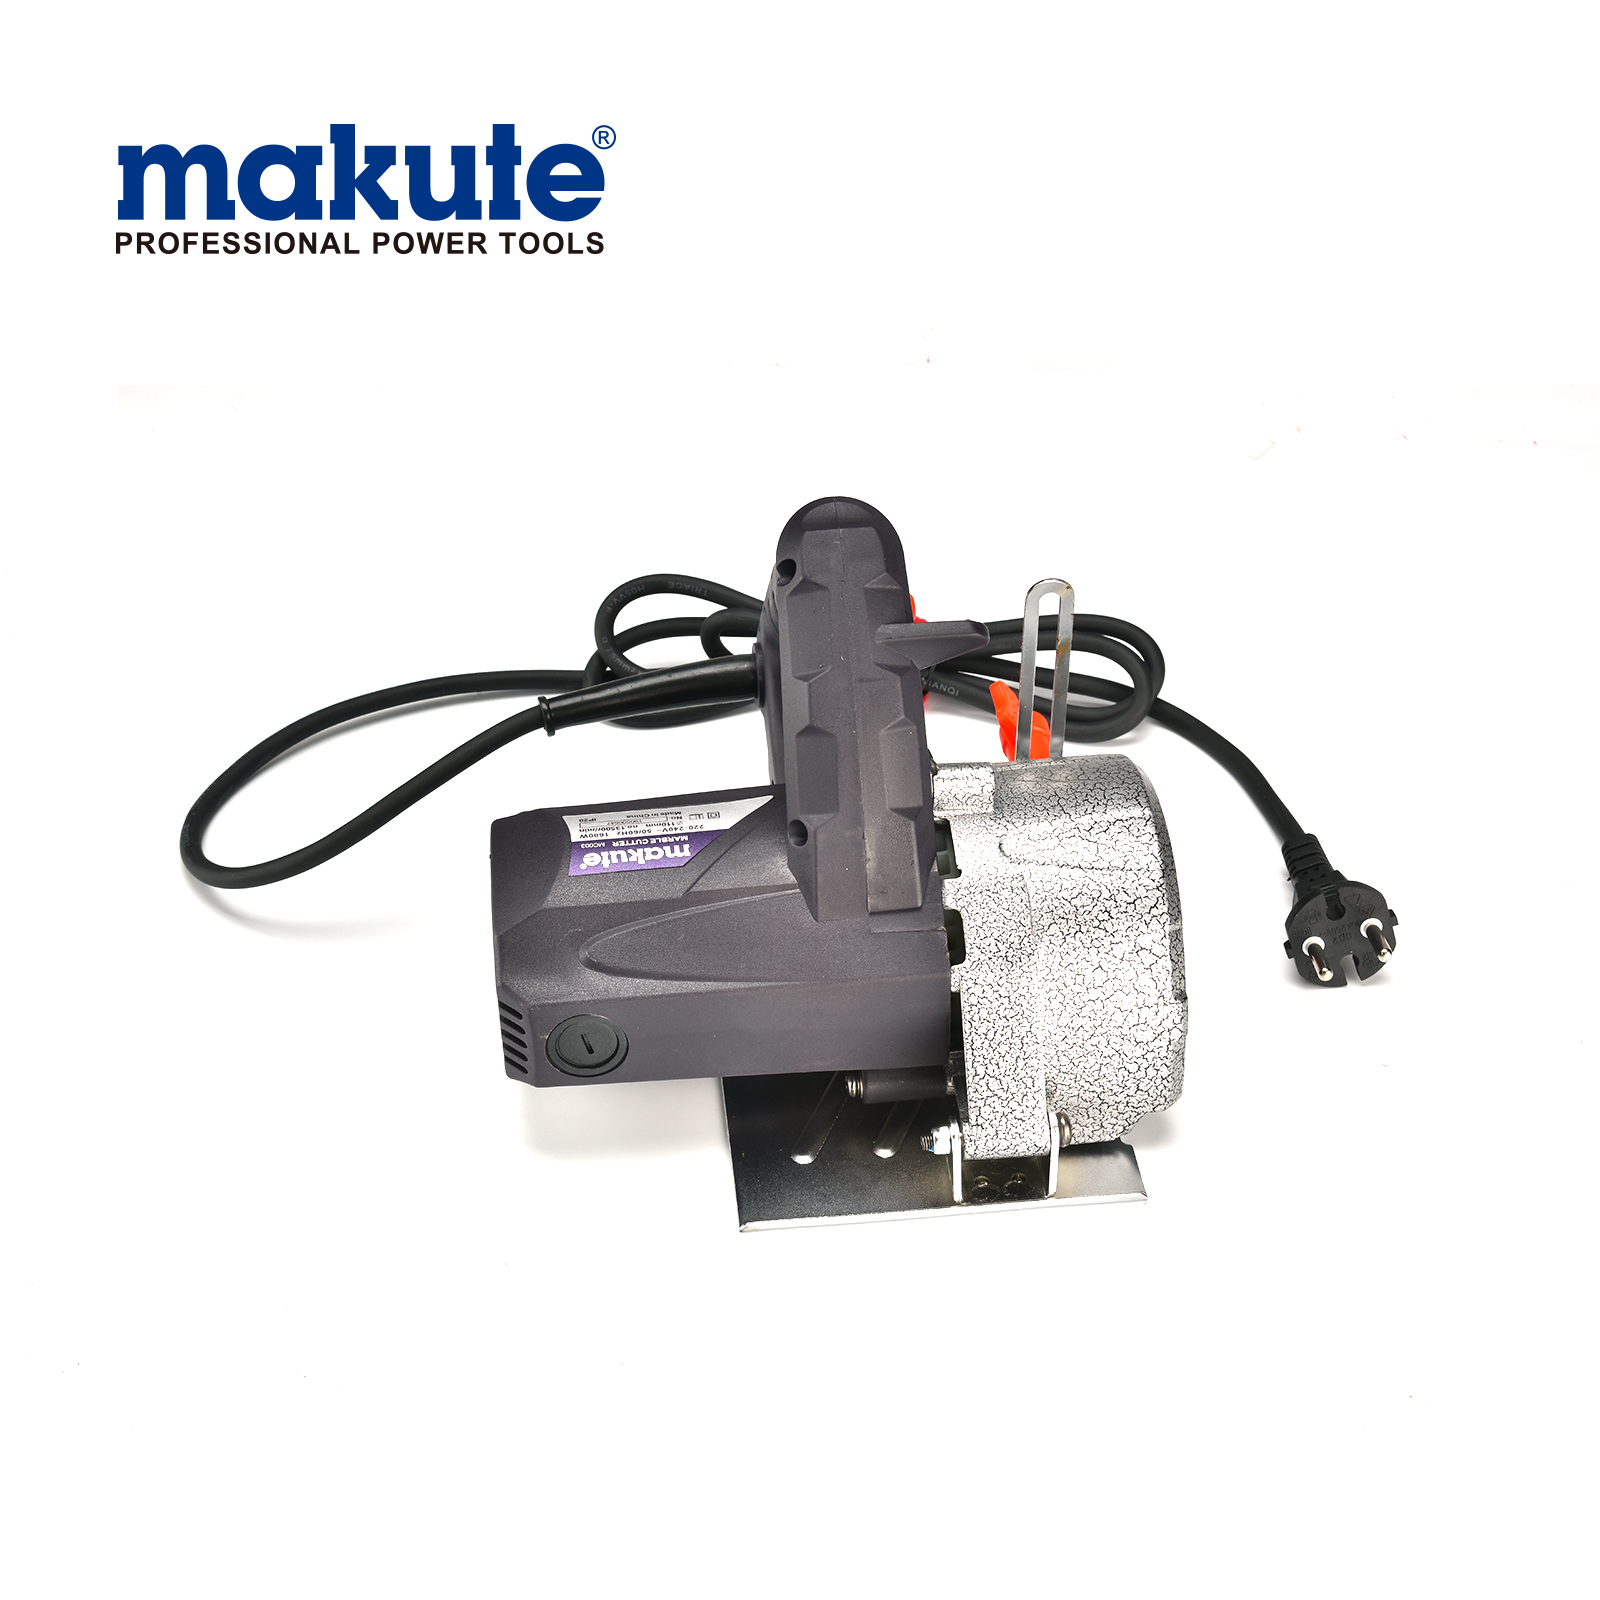 MC003 hecho en China makute powered tools machine cortador de mármol de puente de 110 mm y 1600 w